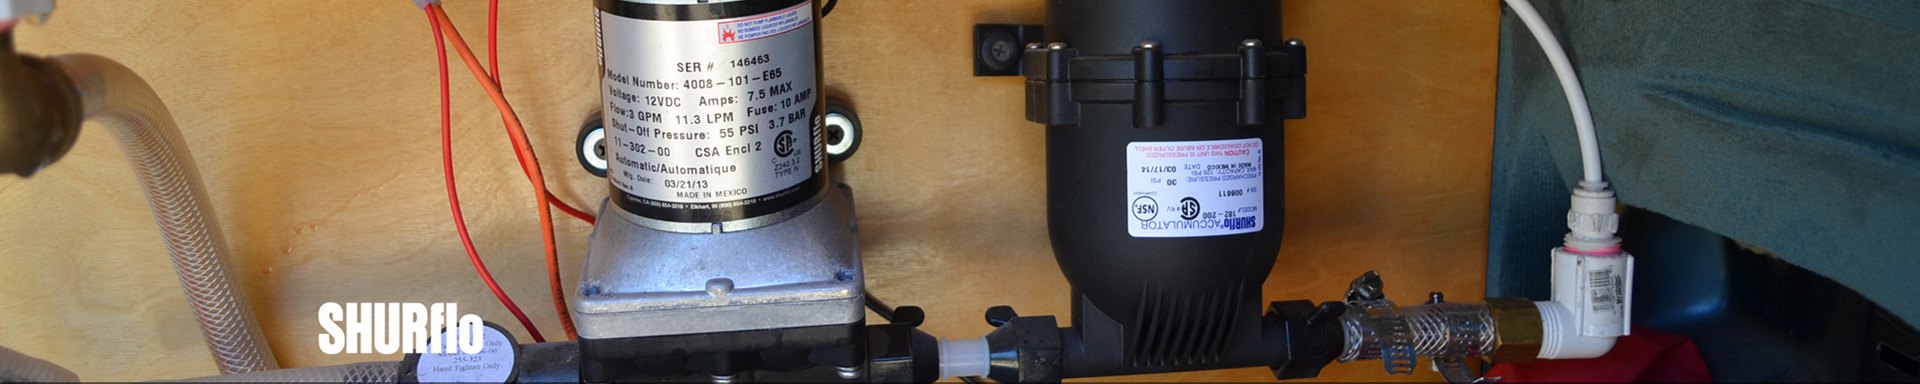 SHURflo RV Water Filters & Cartridges